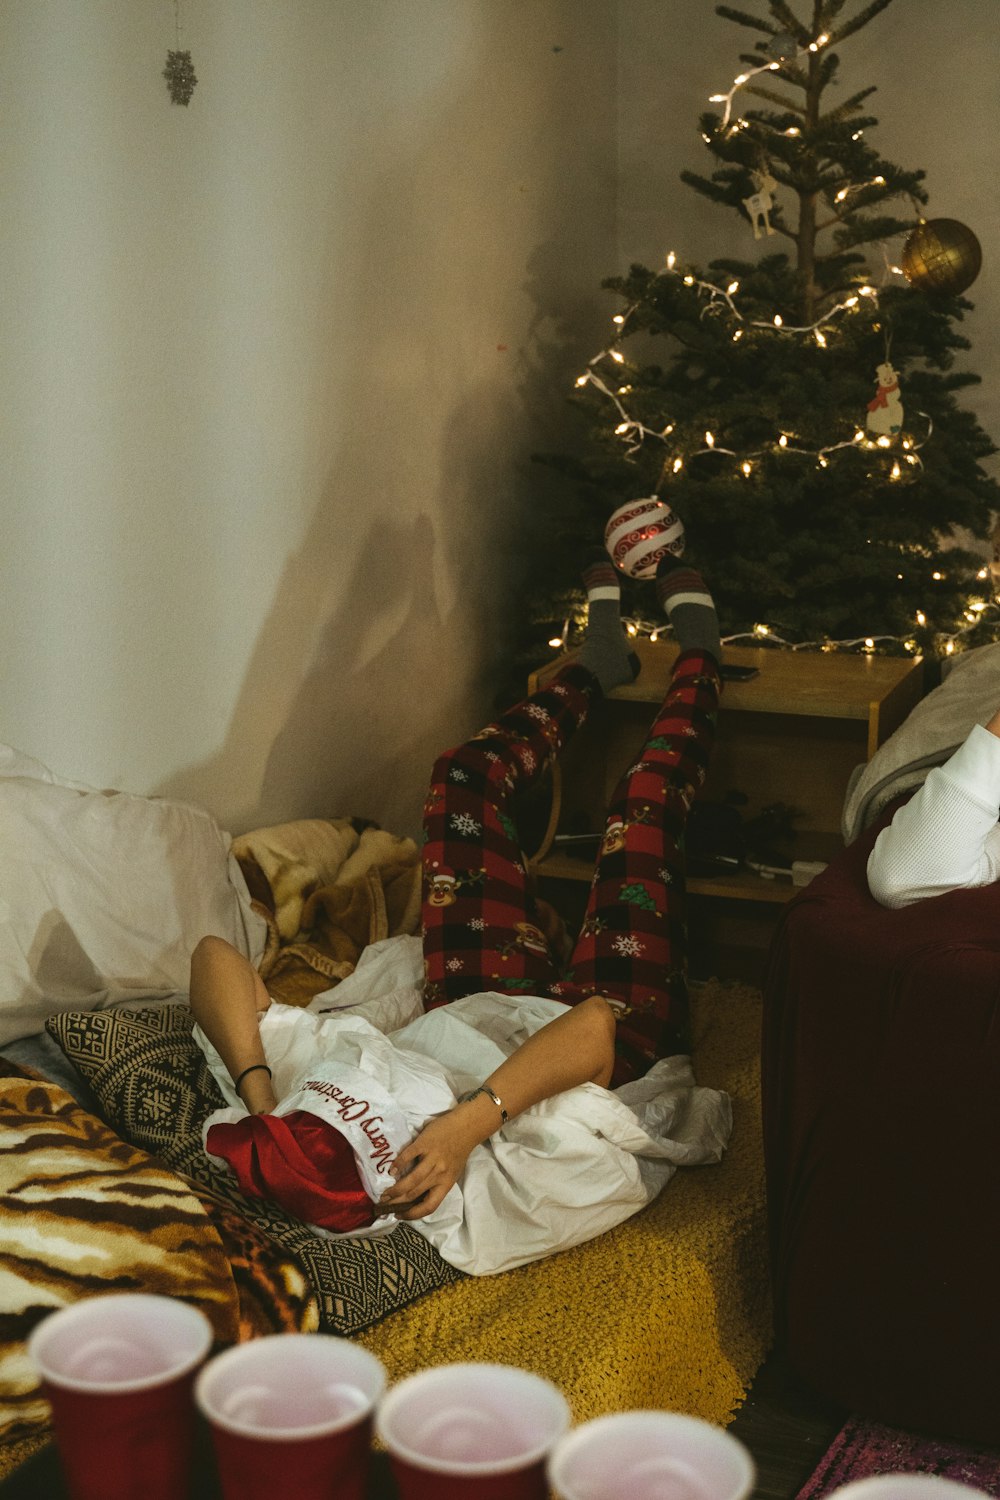 Persona in camicia bianca sdraiata sul letto accanto all'albero di Natale verde